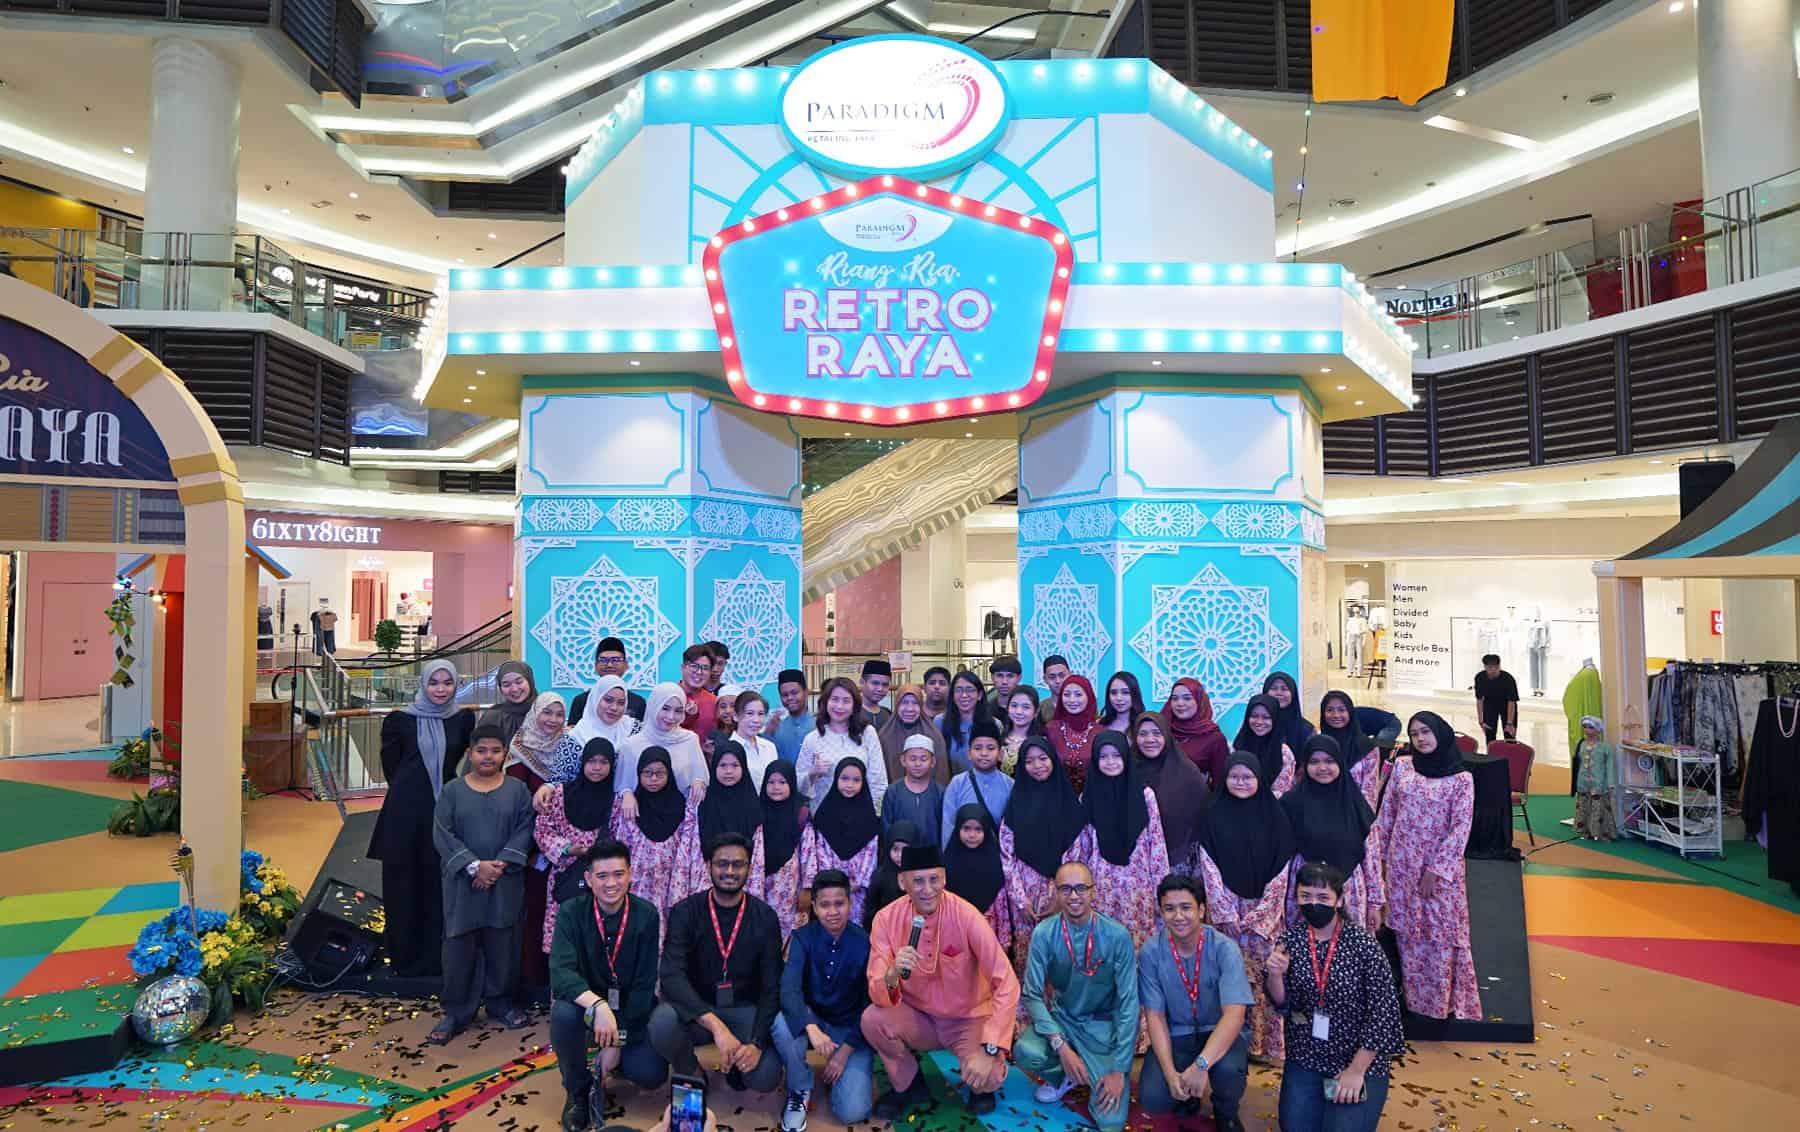 Paradigm Mall Petaling Jaya Launches Riang Ria Retro Raya Campaign